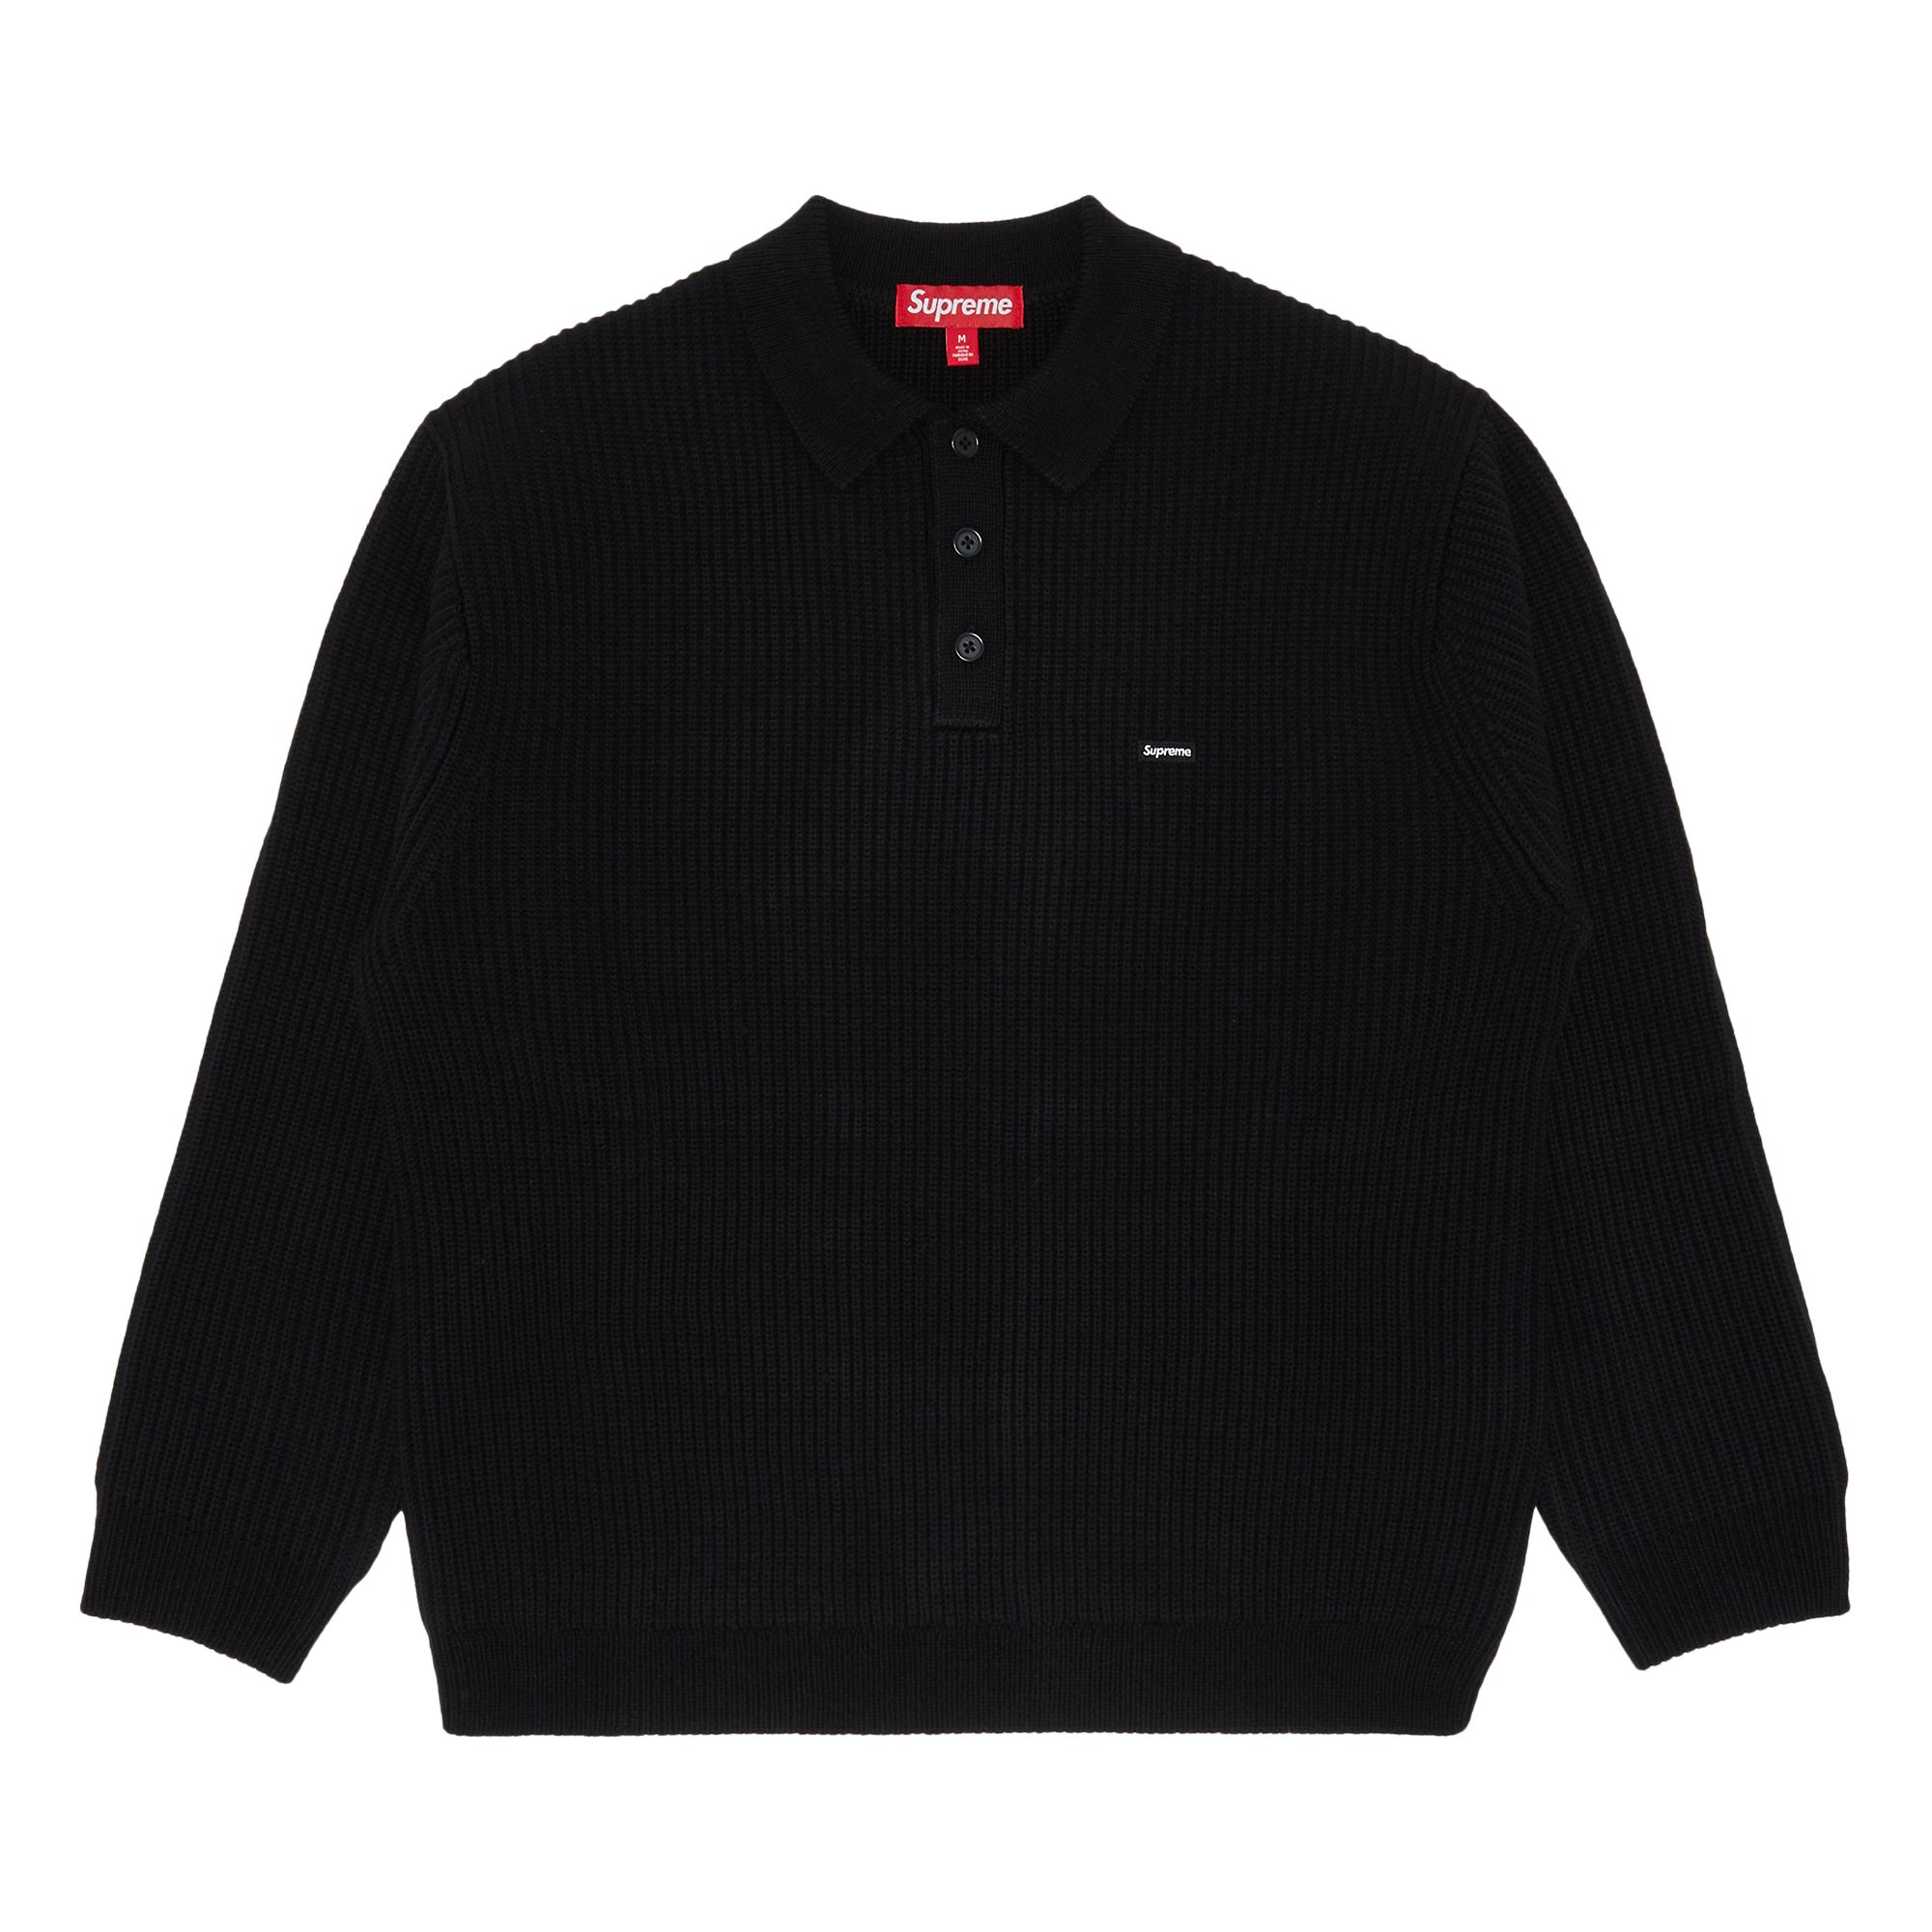 Supreme Small Box Polo Sweater Black-